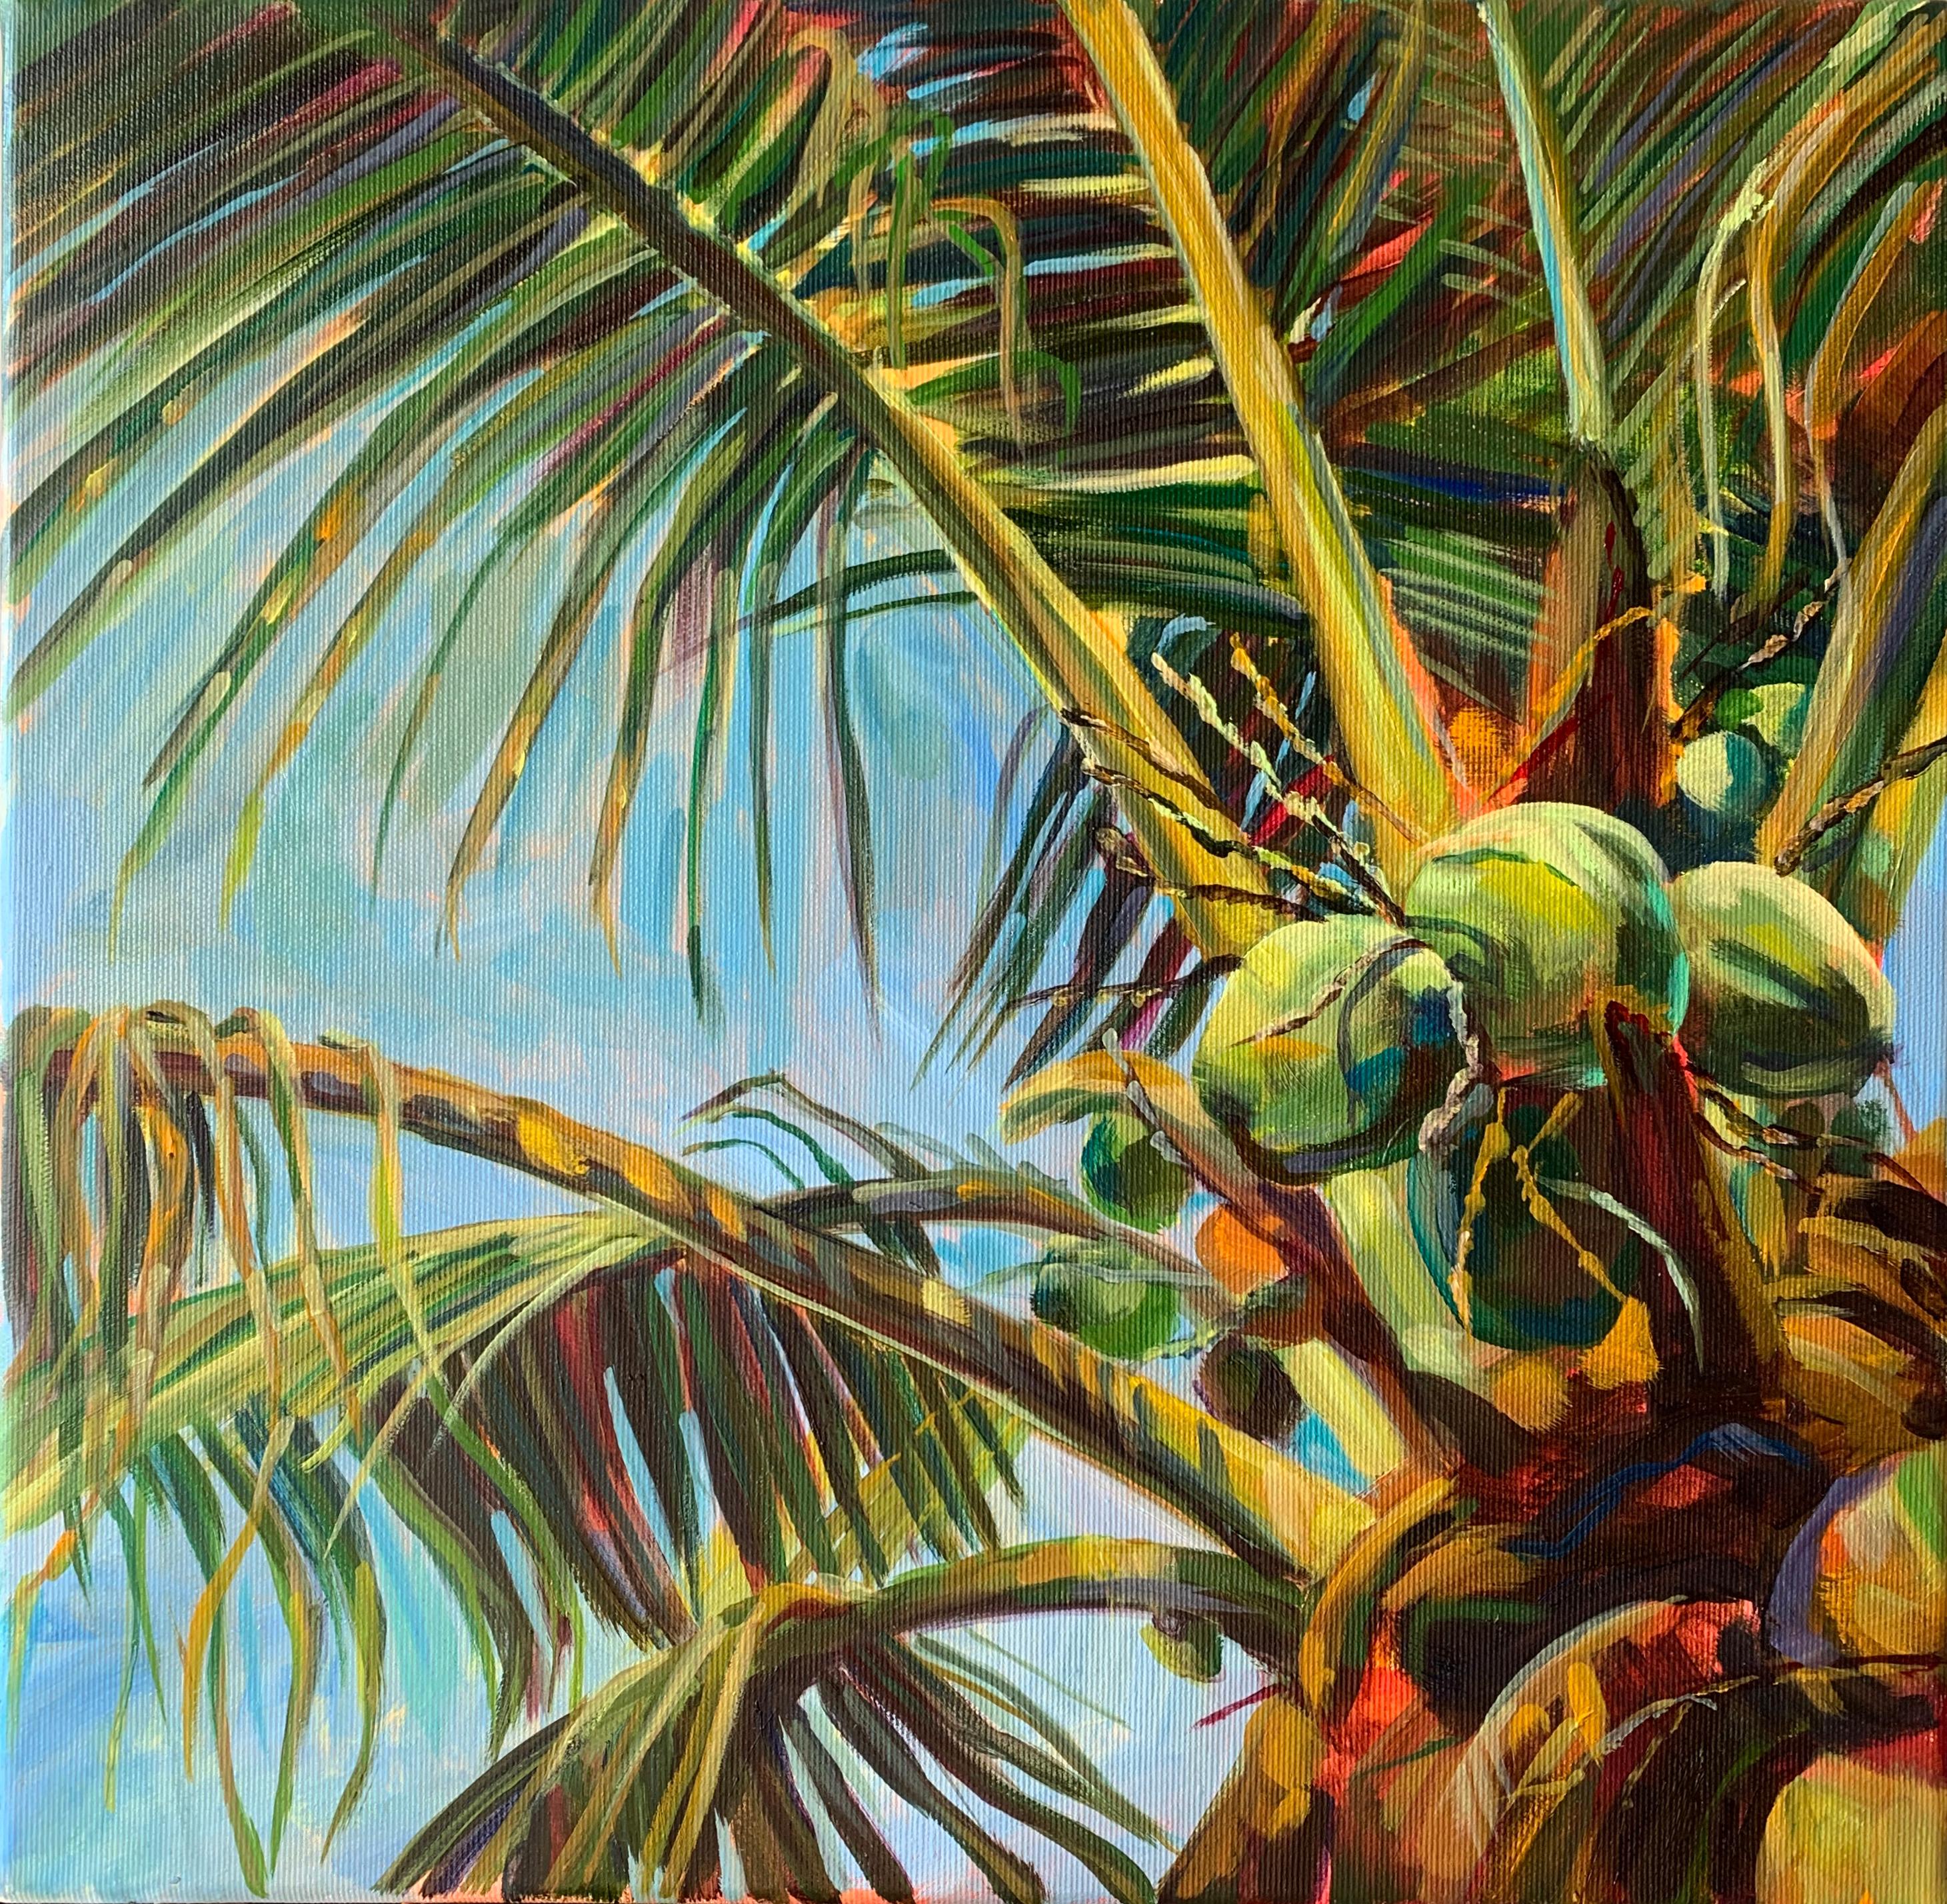 Momalyu Liubov Landscape Painting - Jungle splendor . Original oil painting. leaves of palms - Coastal vibes